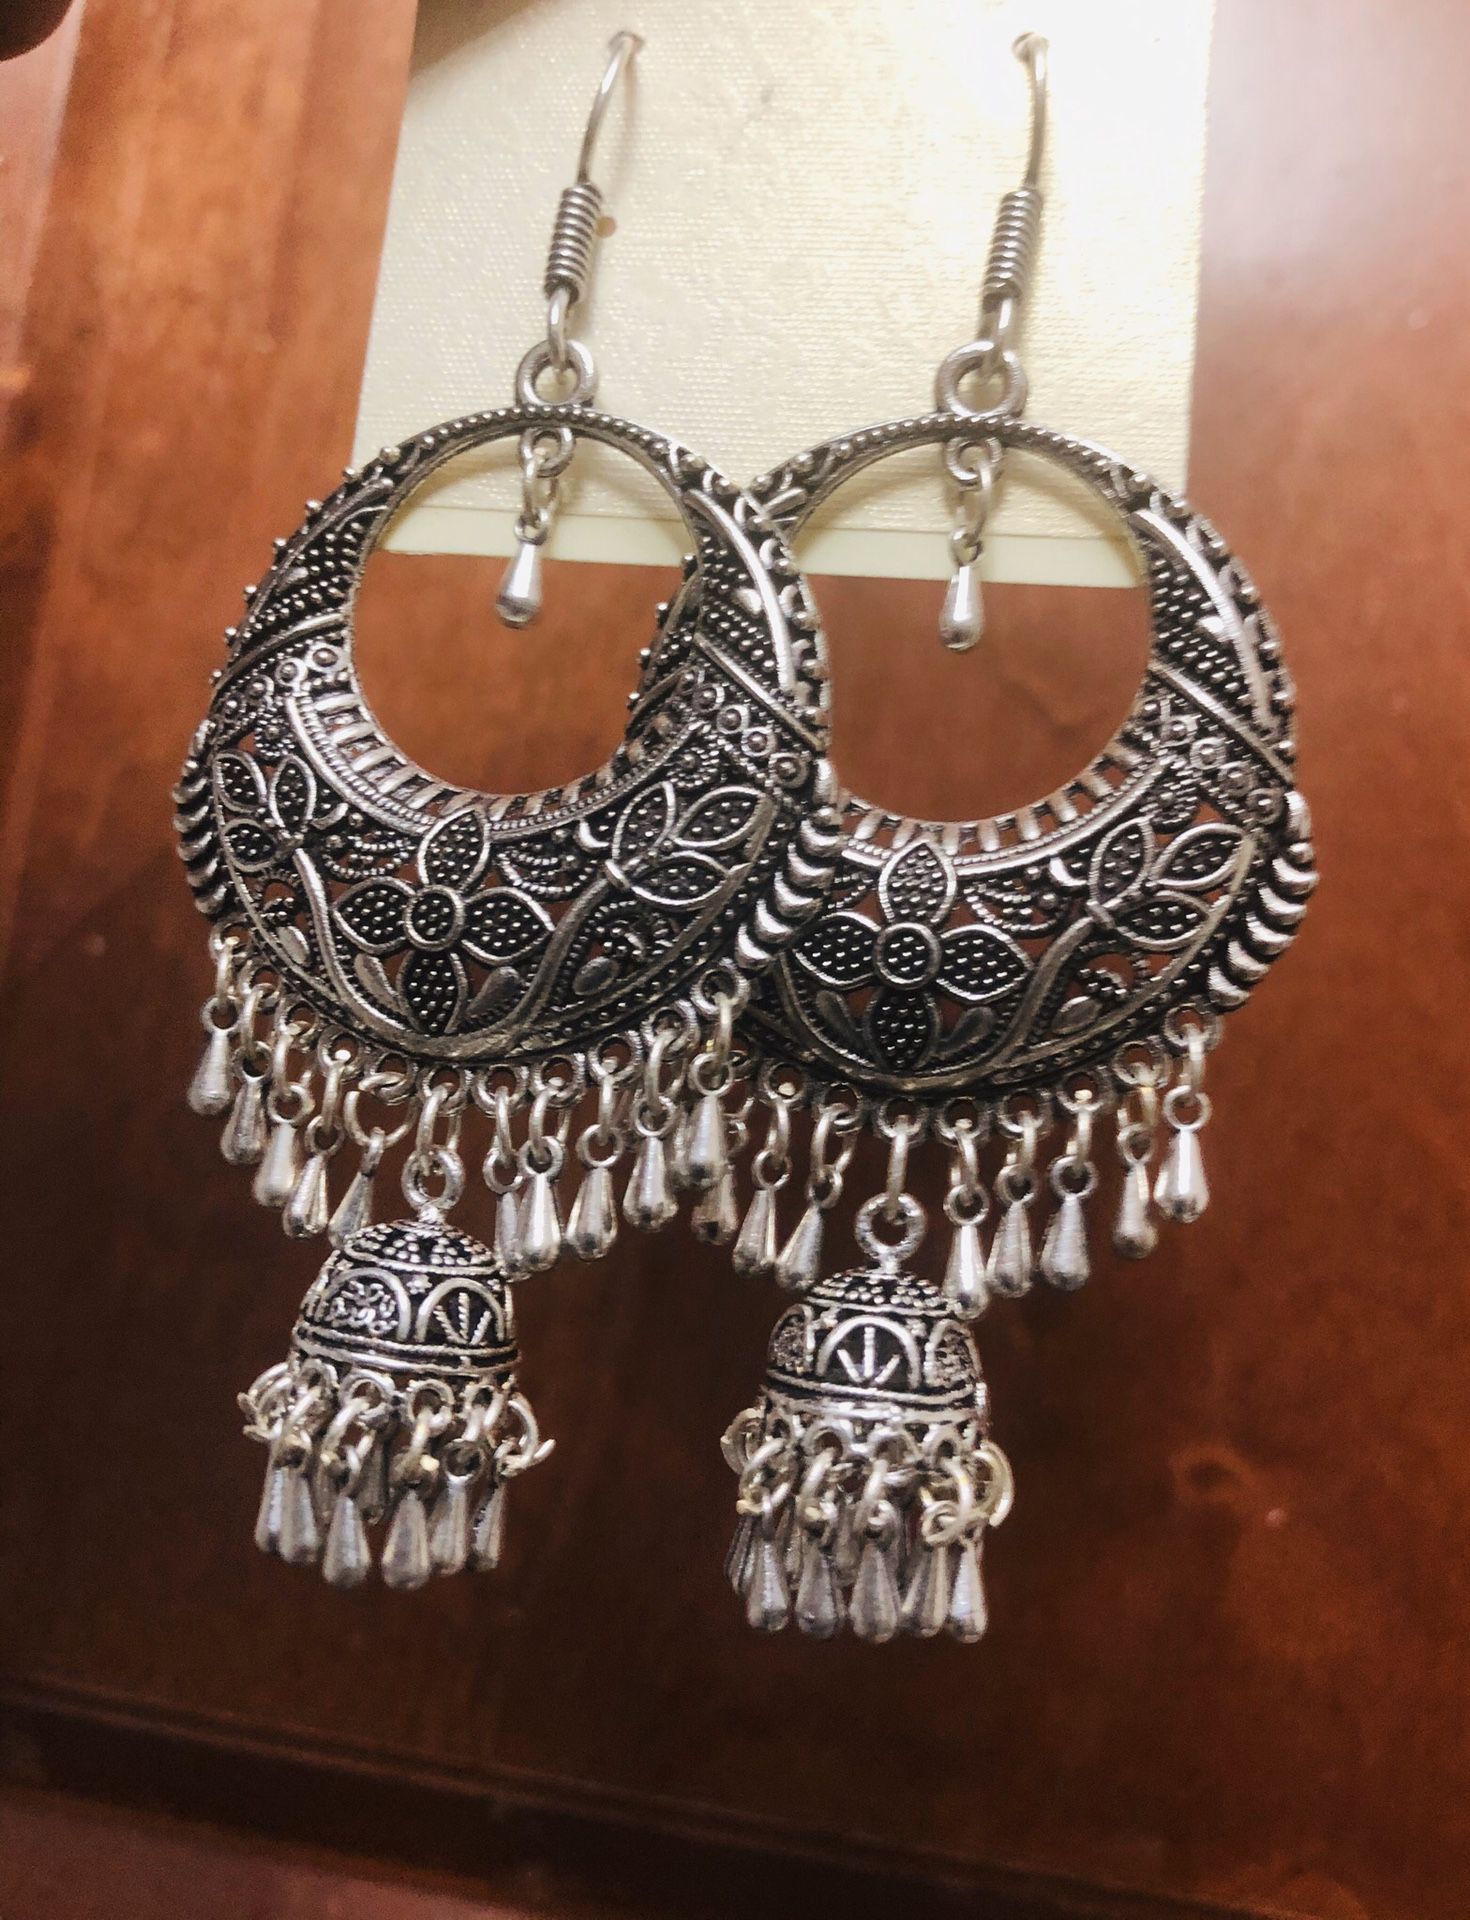 New Silver tone statement earrings, boho earrings, statement jhumkas, silver jhumkas, peacock earrings, bohemian jewelry, long indian earrings